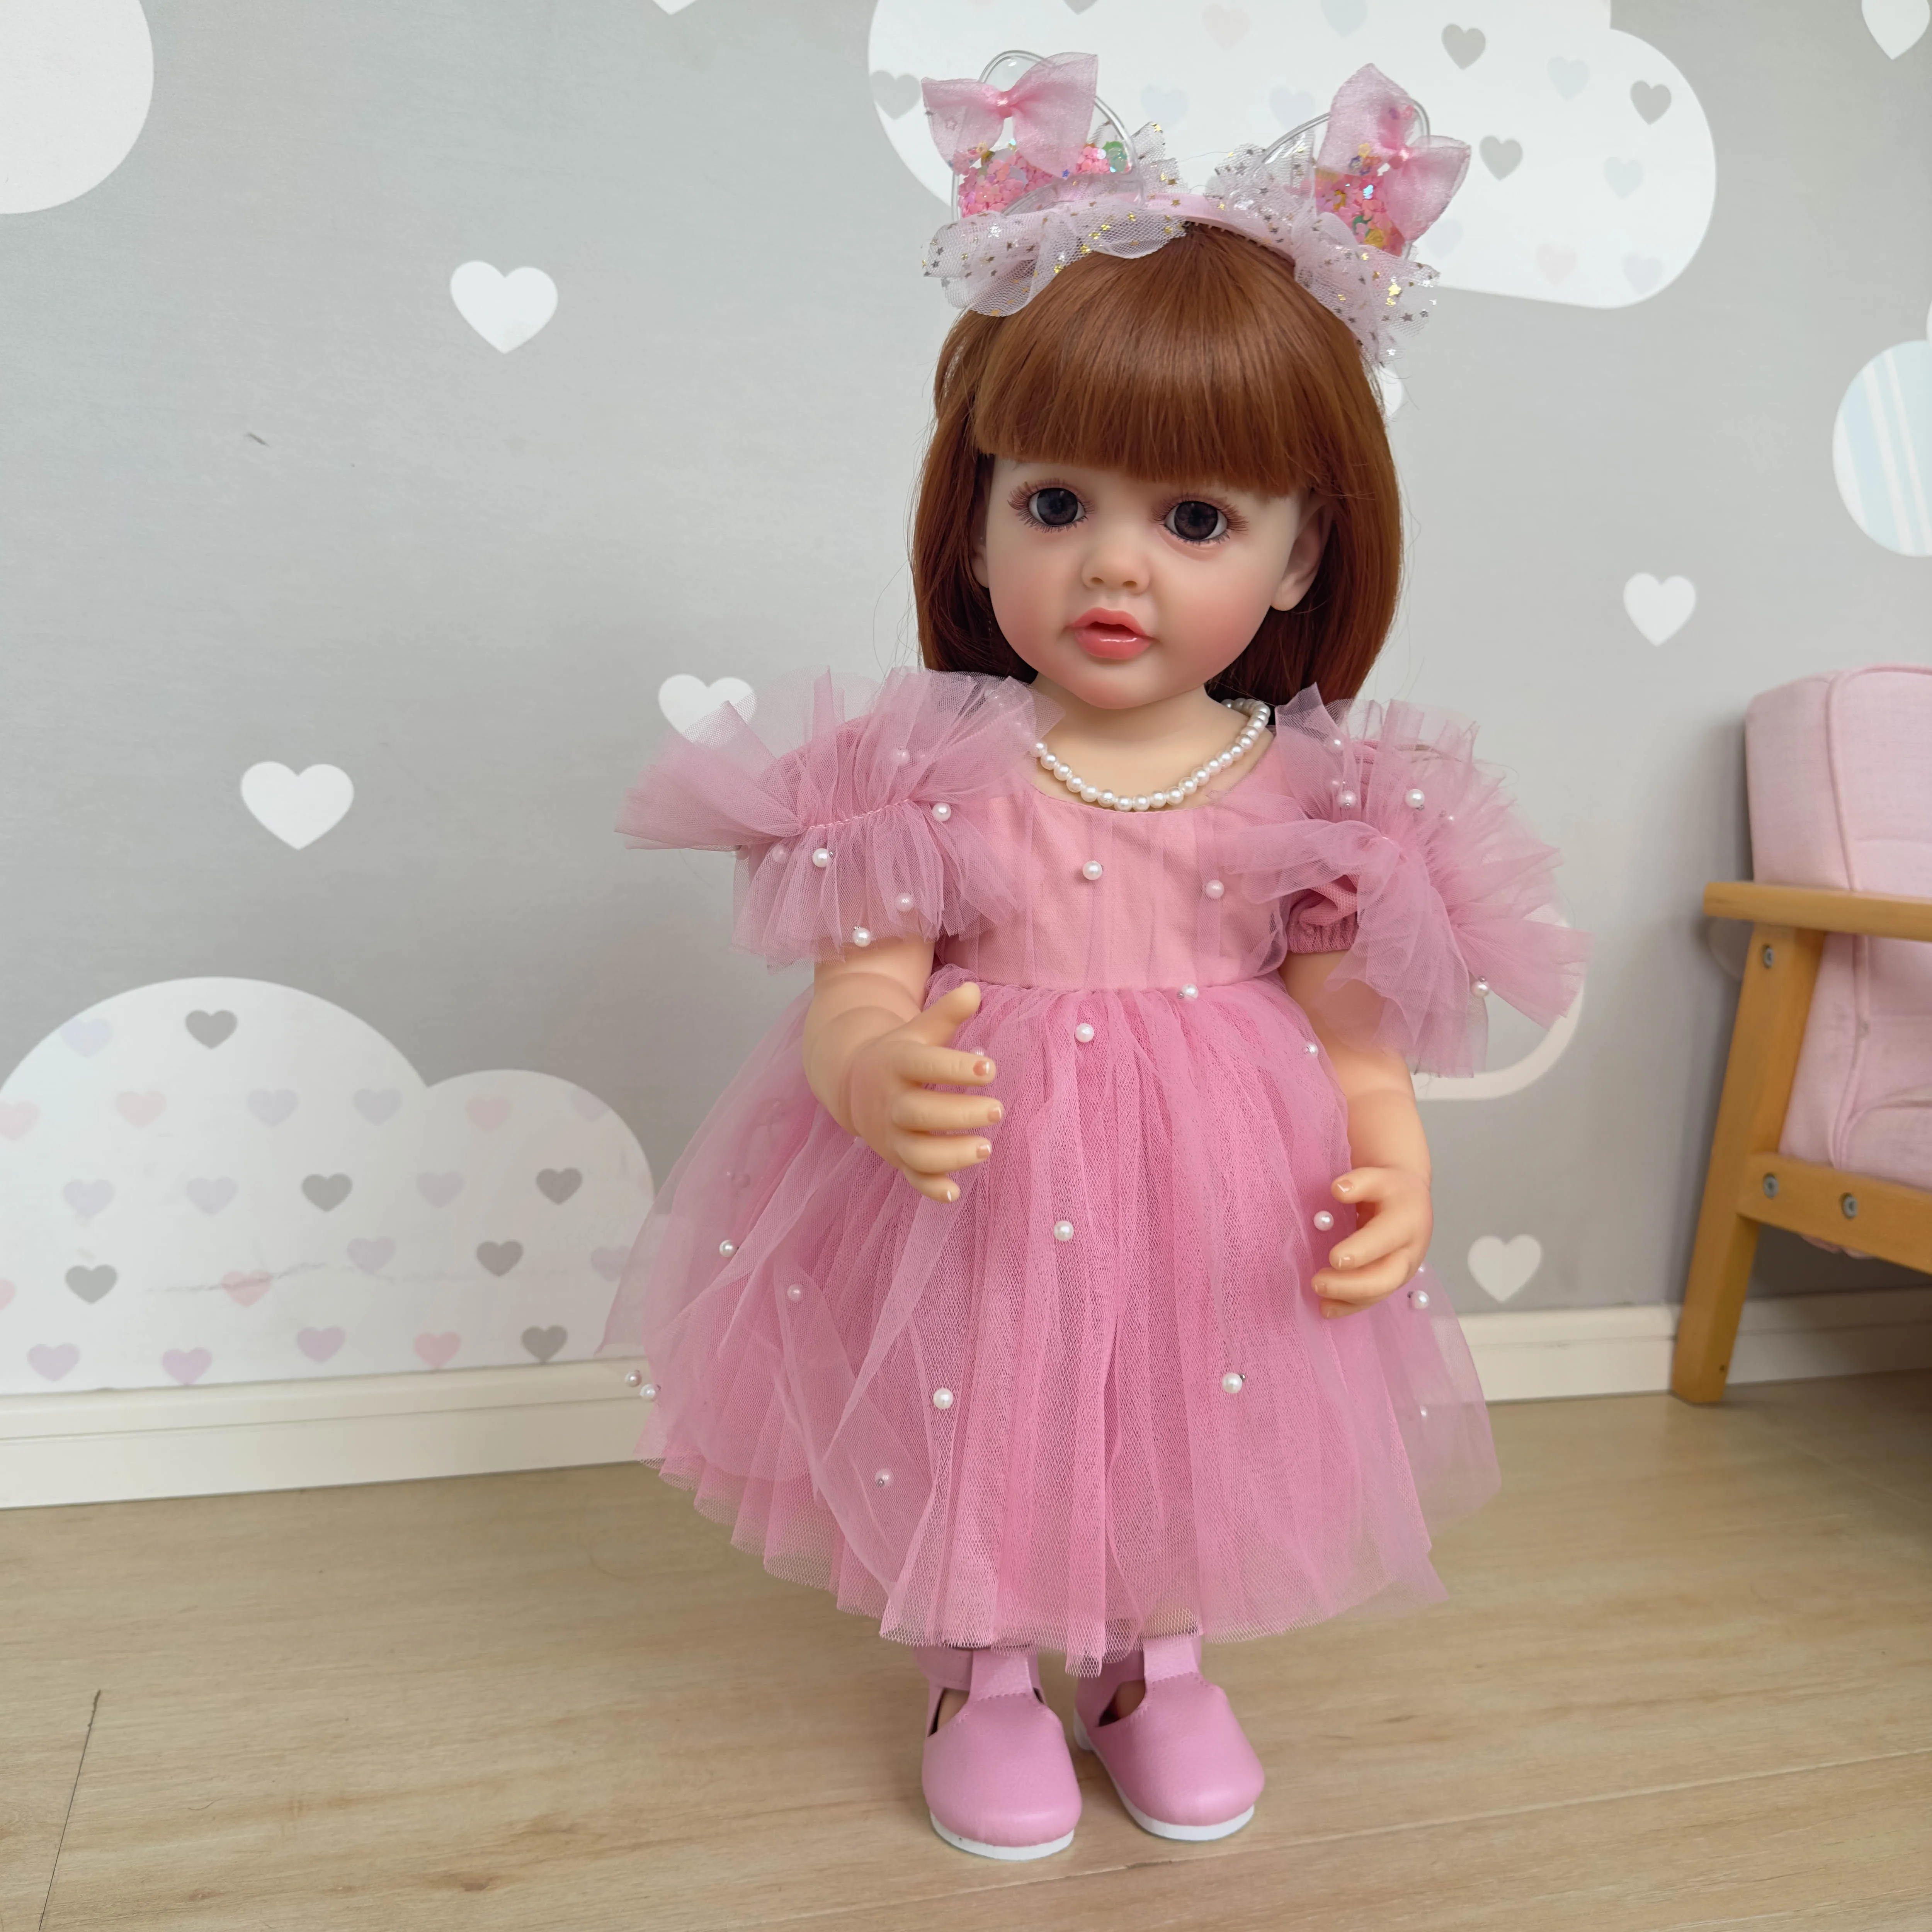 SANDIE 22 дюйма, мягкая силиконовая виниловая кукла для новорожденных девочек-малышей, принцесса Бетти, в розовом платье, подарки для детей